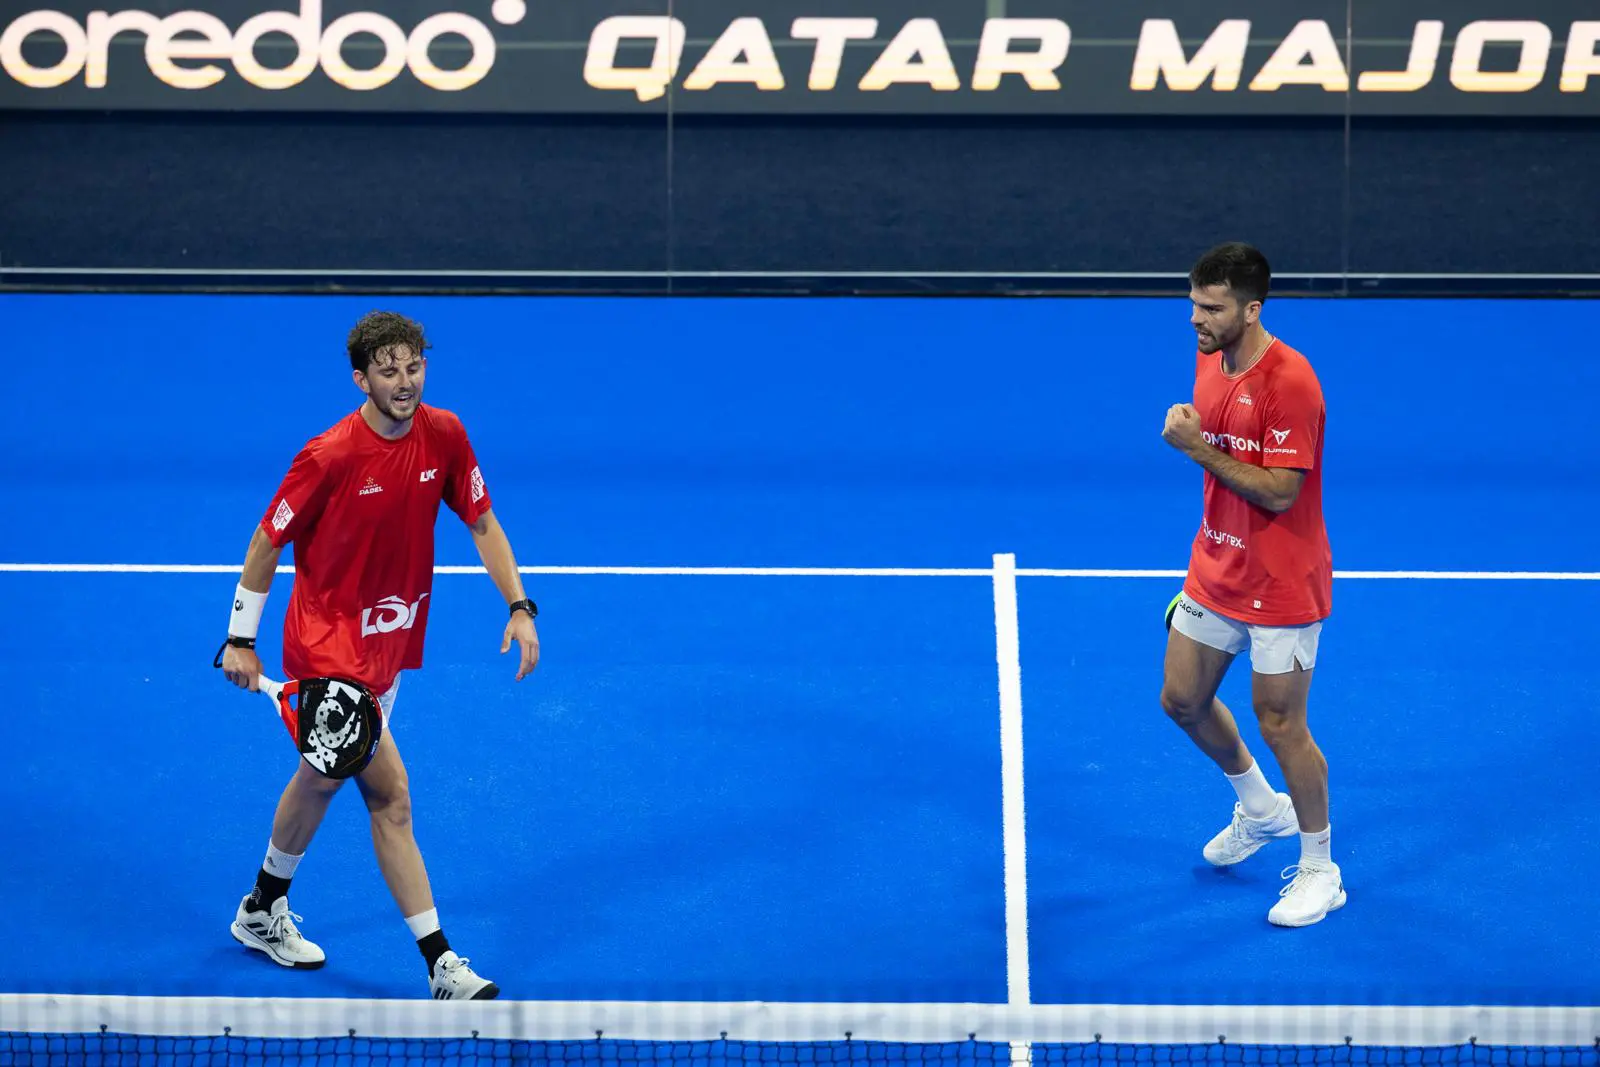 Qatar Major – Mike Yanguas och Javi Garrido krossar de försvarande mästarna och når finalen